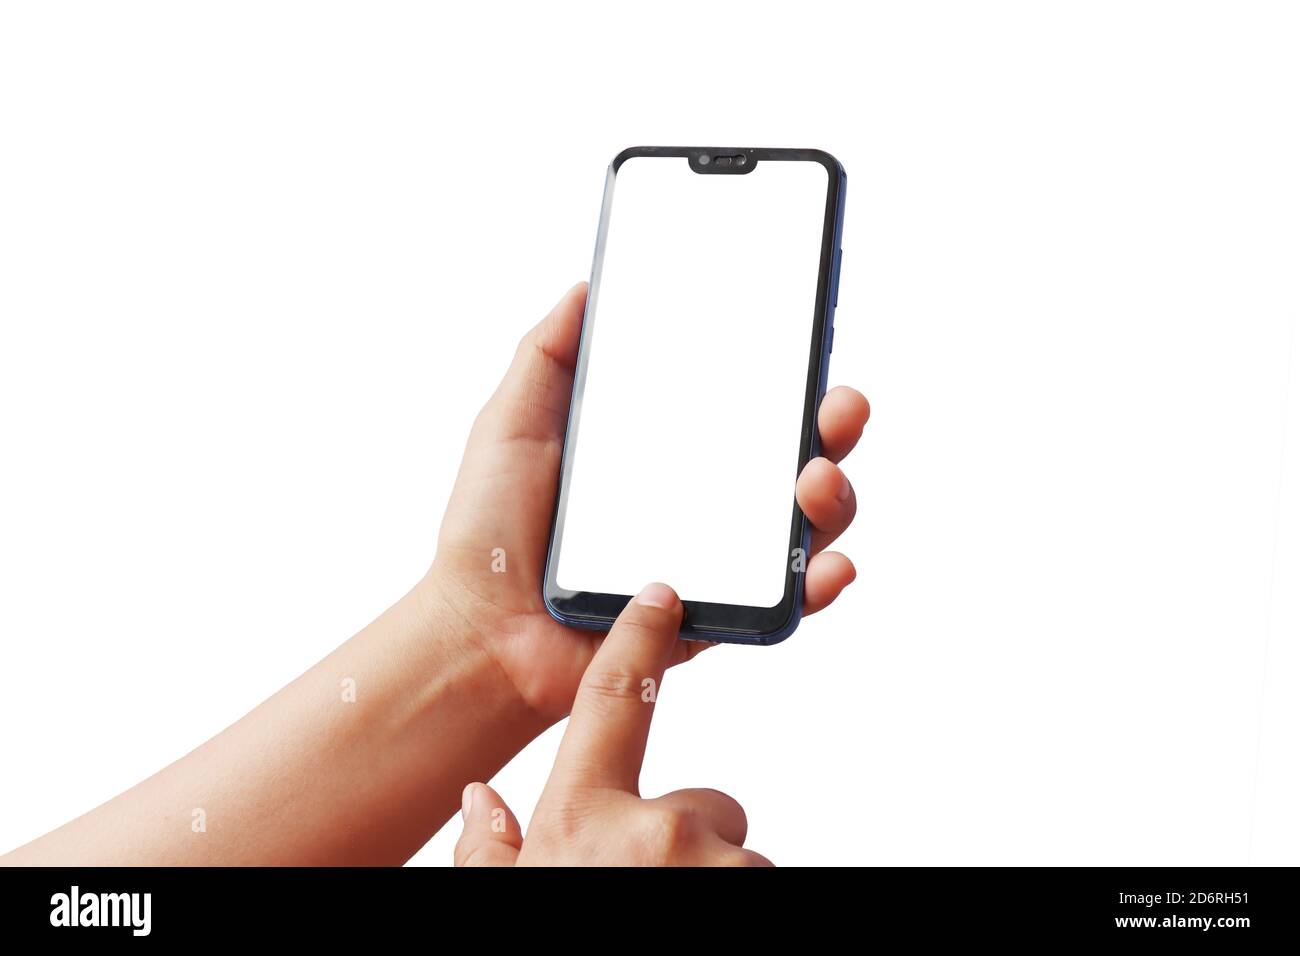 Une femme utilise ses doigts pour imprimer sur l'écran d'un téléphone mobile moderne, isolé sur un fond blanc avec des chemins d'écrêtage. Banque D'Images